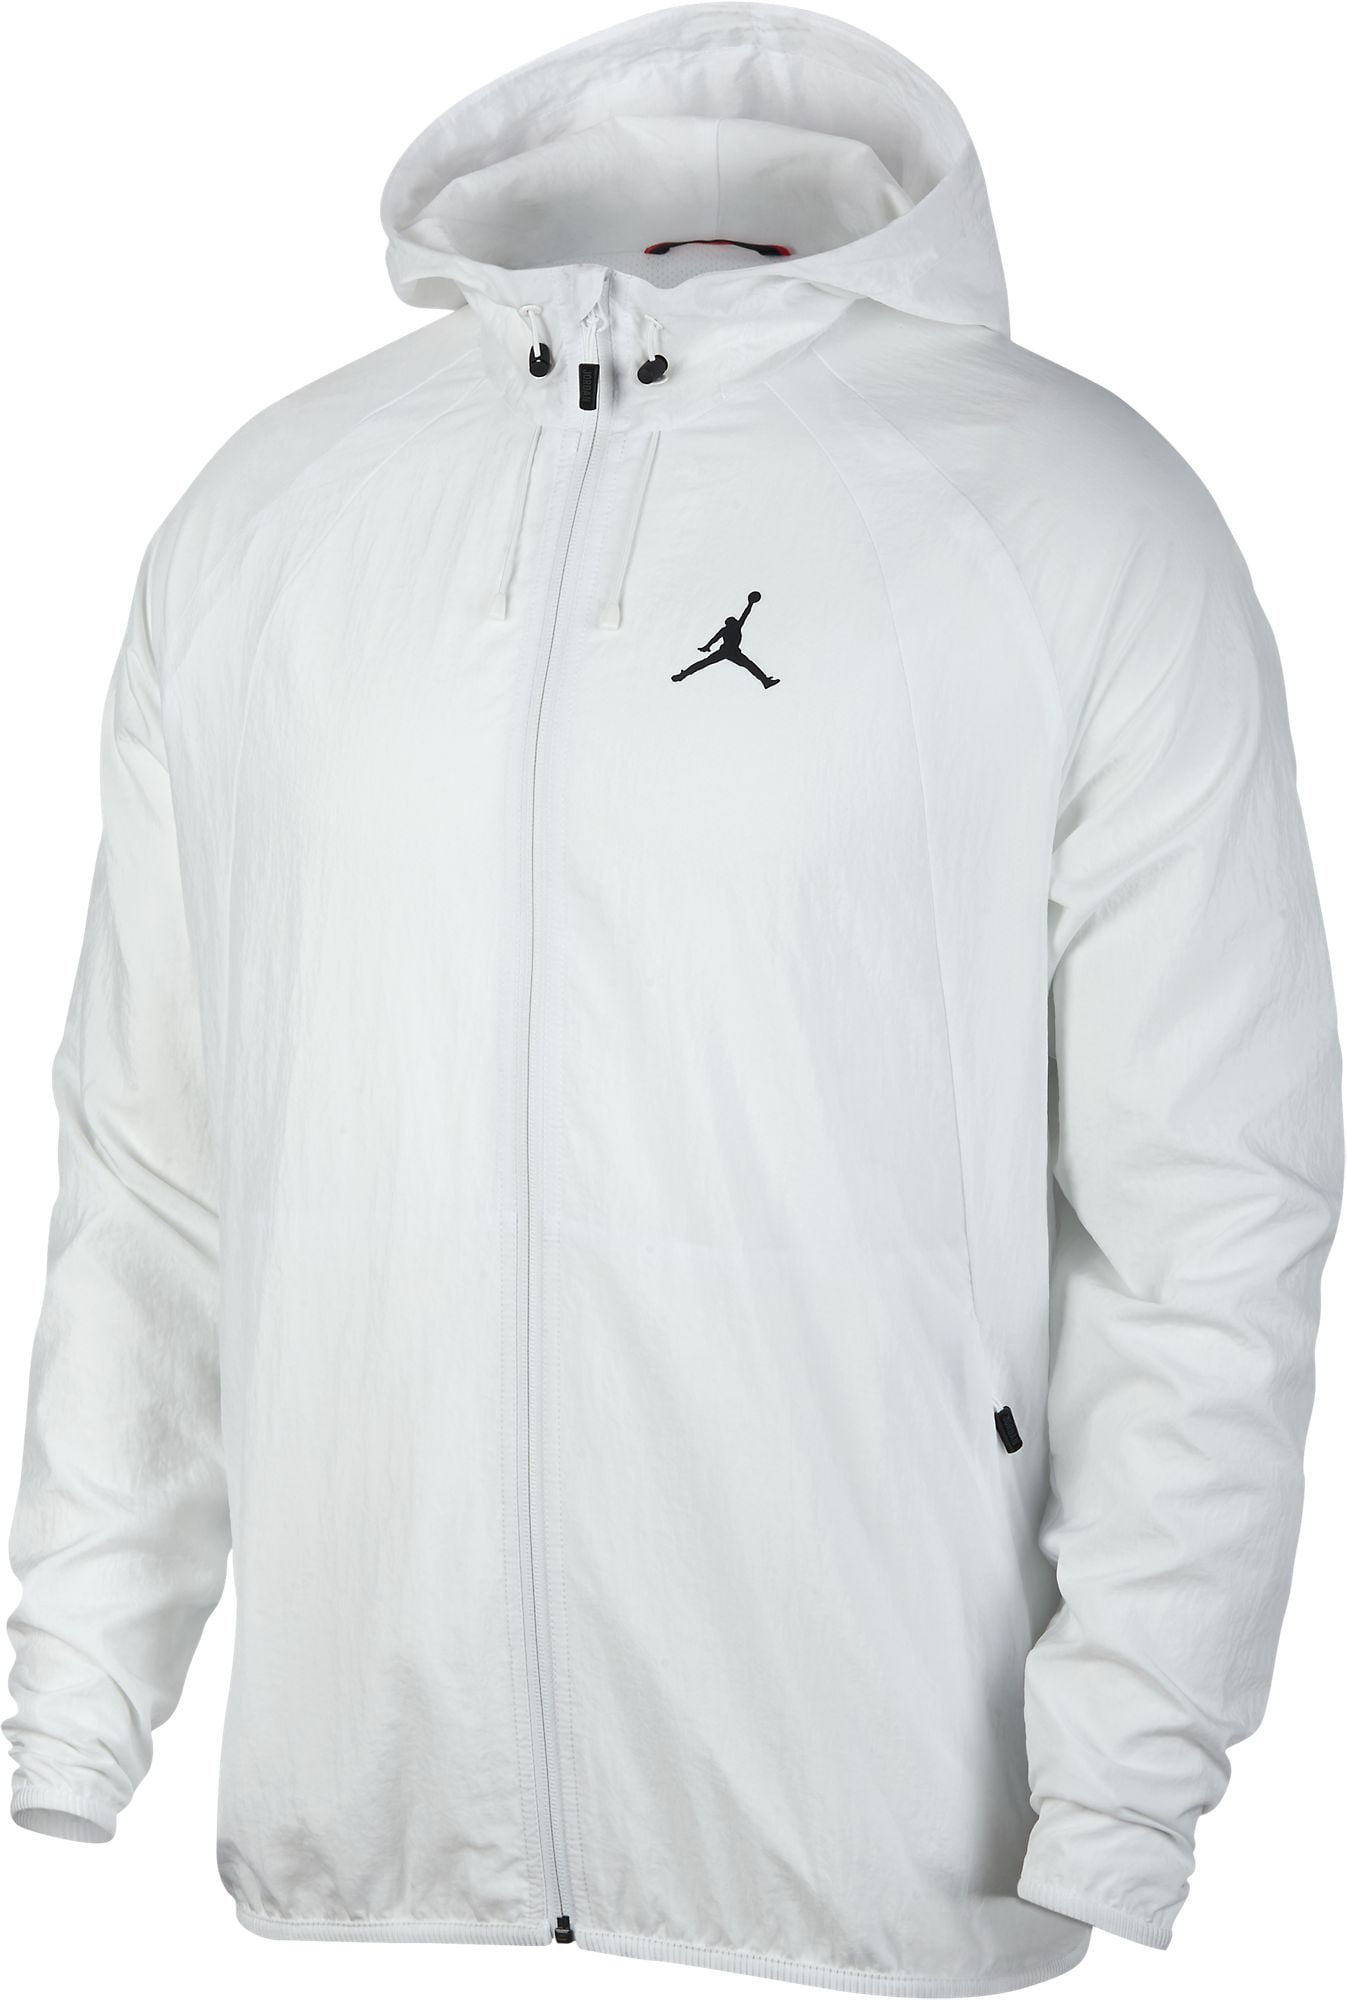 white jordan jacket